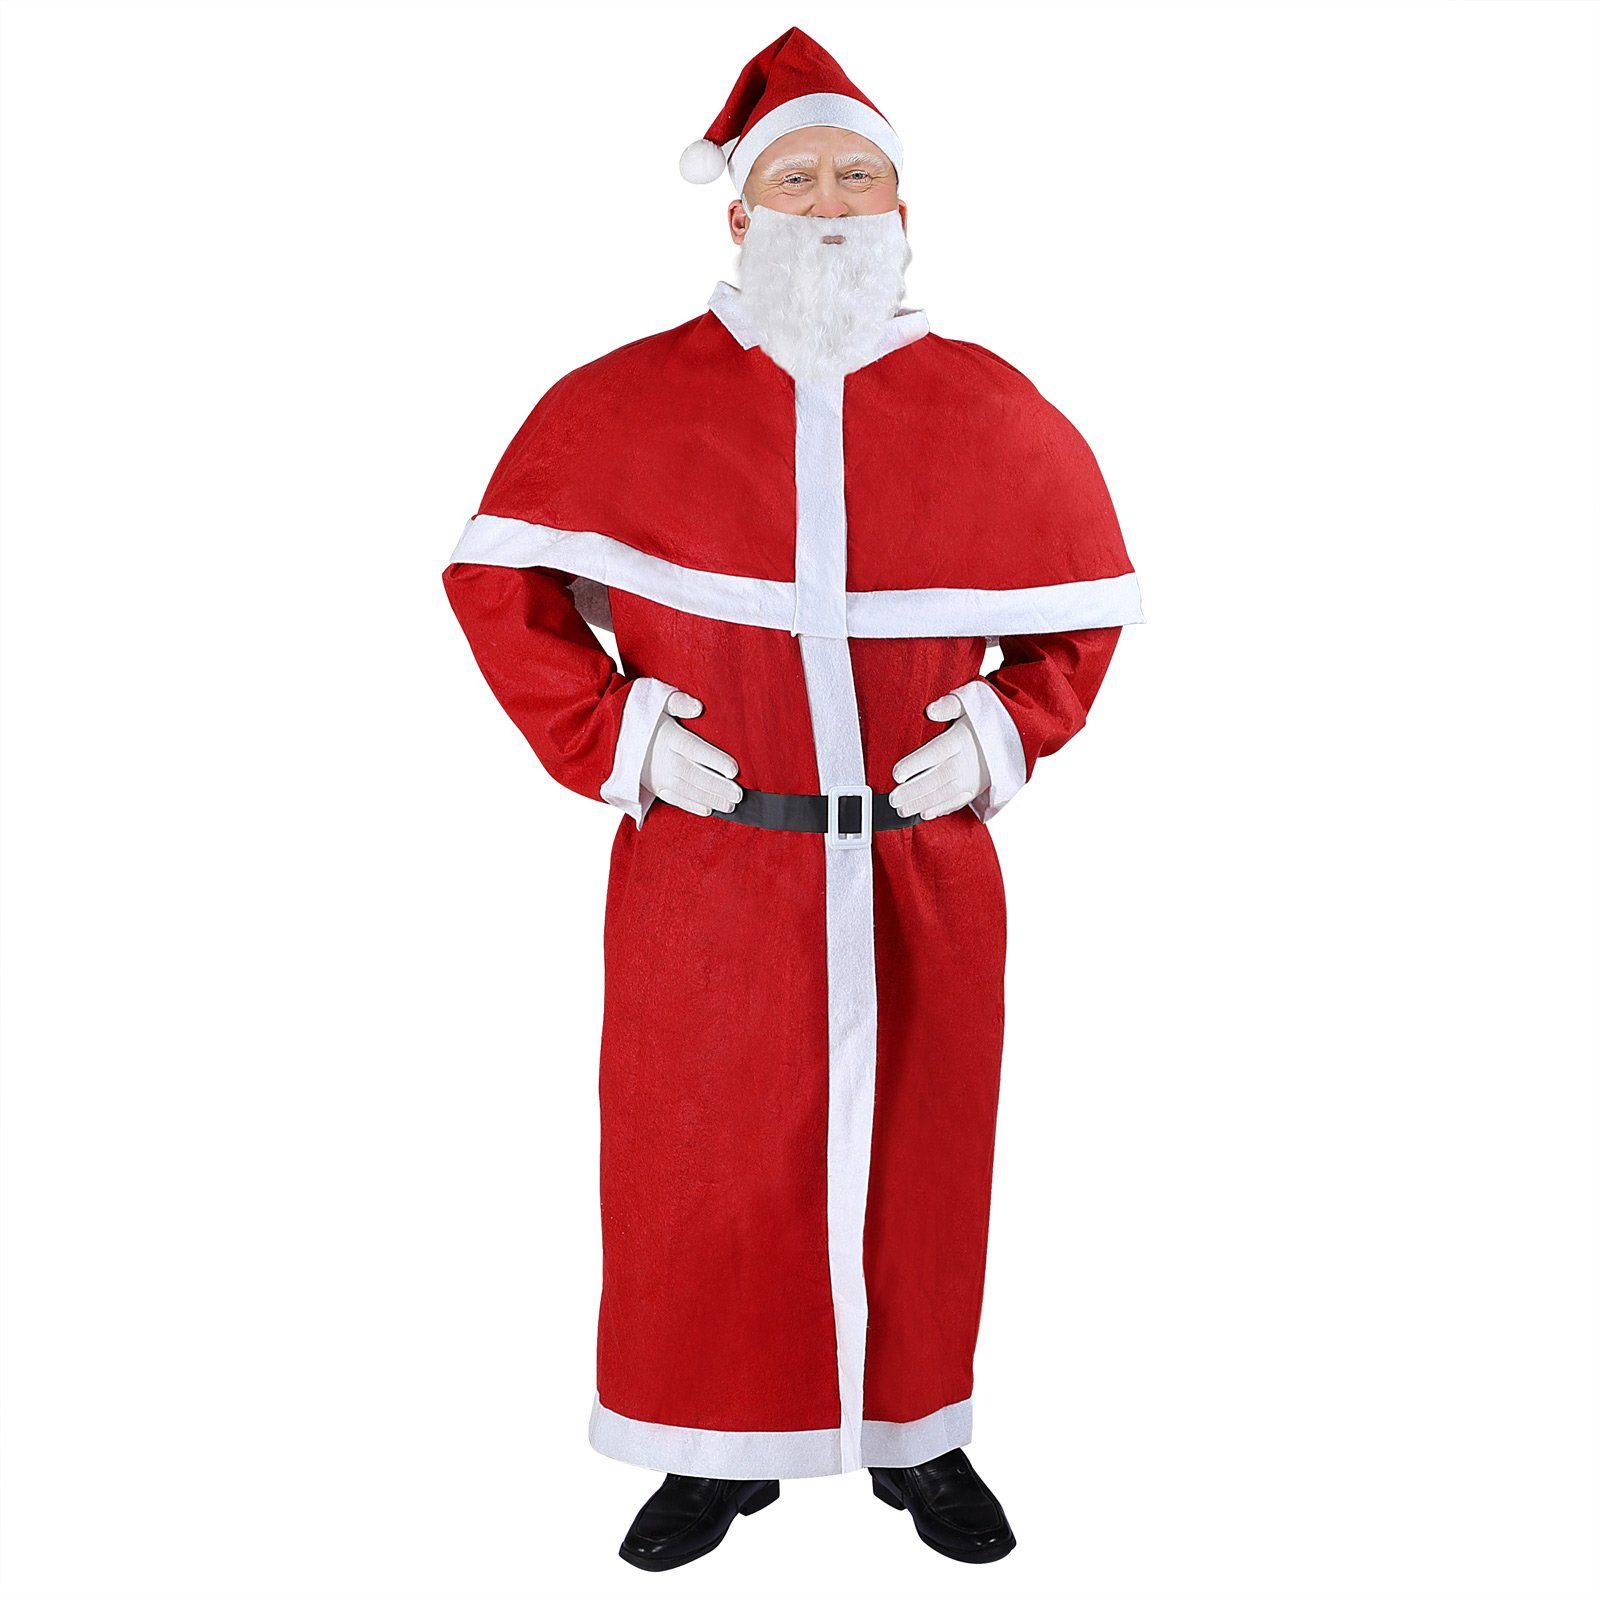 Detex Kostüm, Weihnachtsmann Kostüm 5tlg. Set Nikolaus Anzug Erwachsenen  Santa Claus Cosplay Verkleidung Einheitsgröße M – XXXL